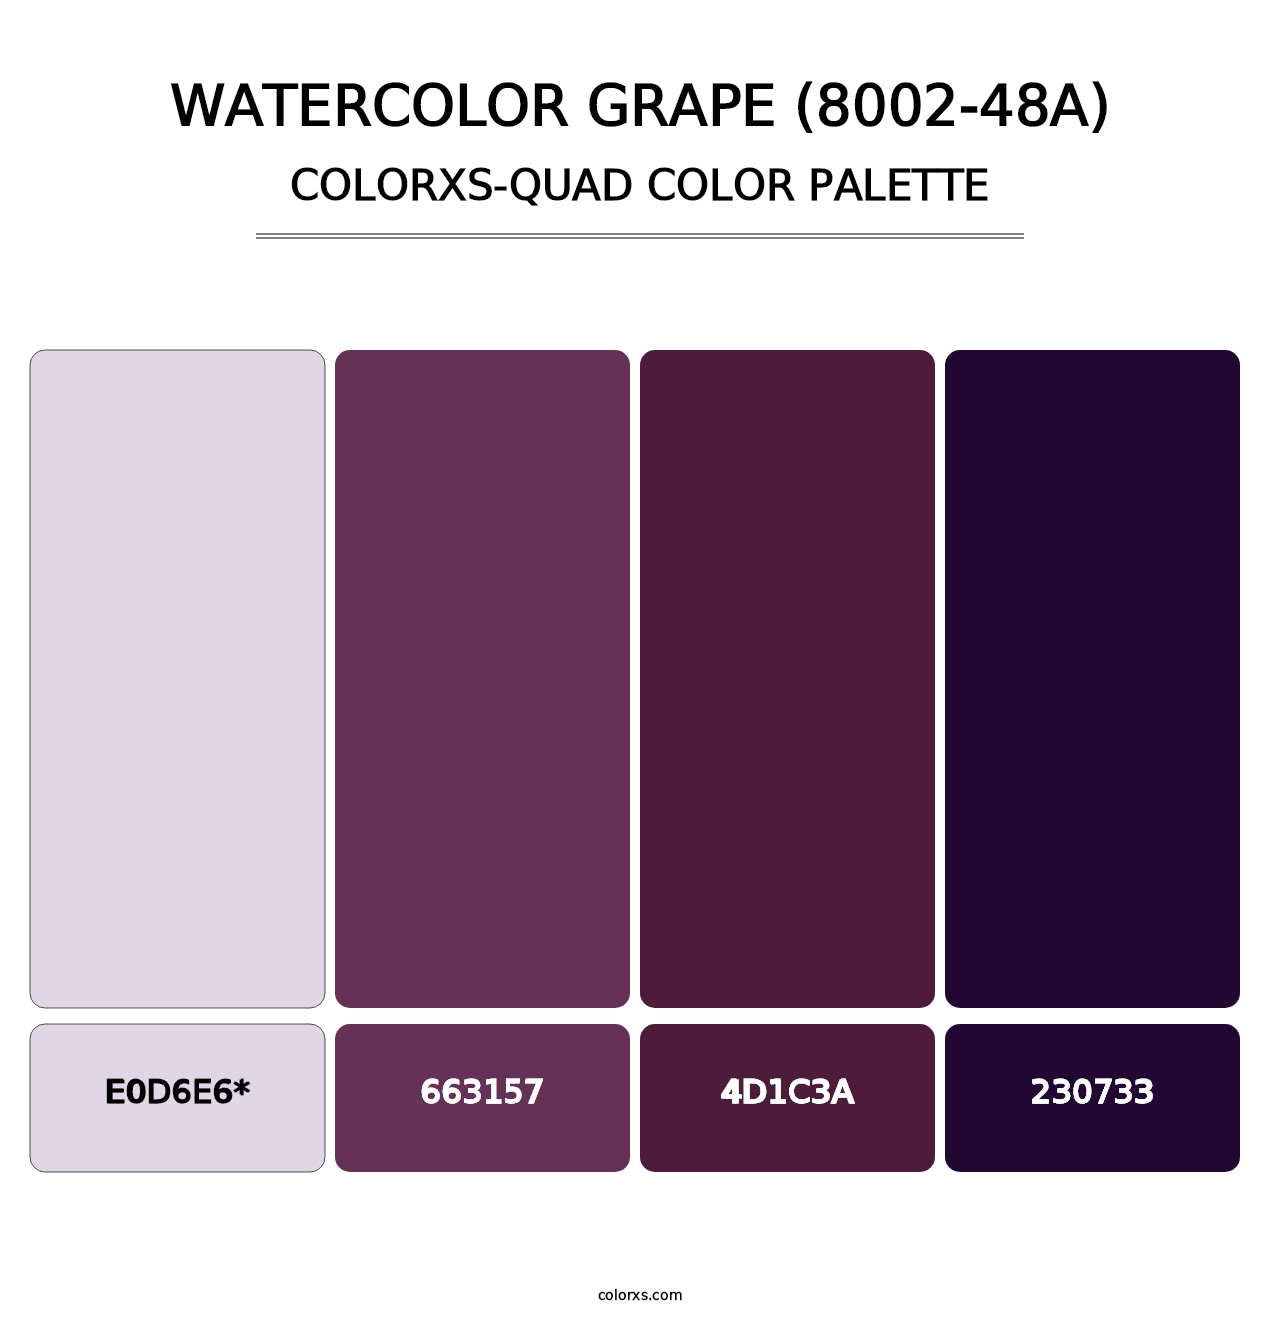 Watercolor Grape (8002-48A) - Colorxs Quad Palette